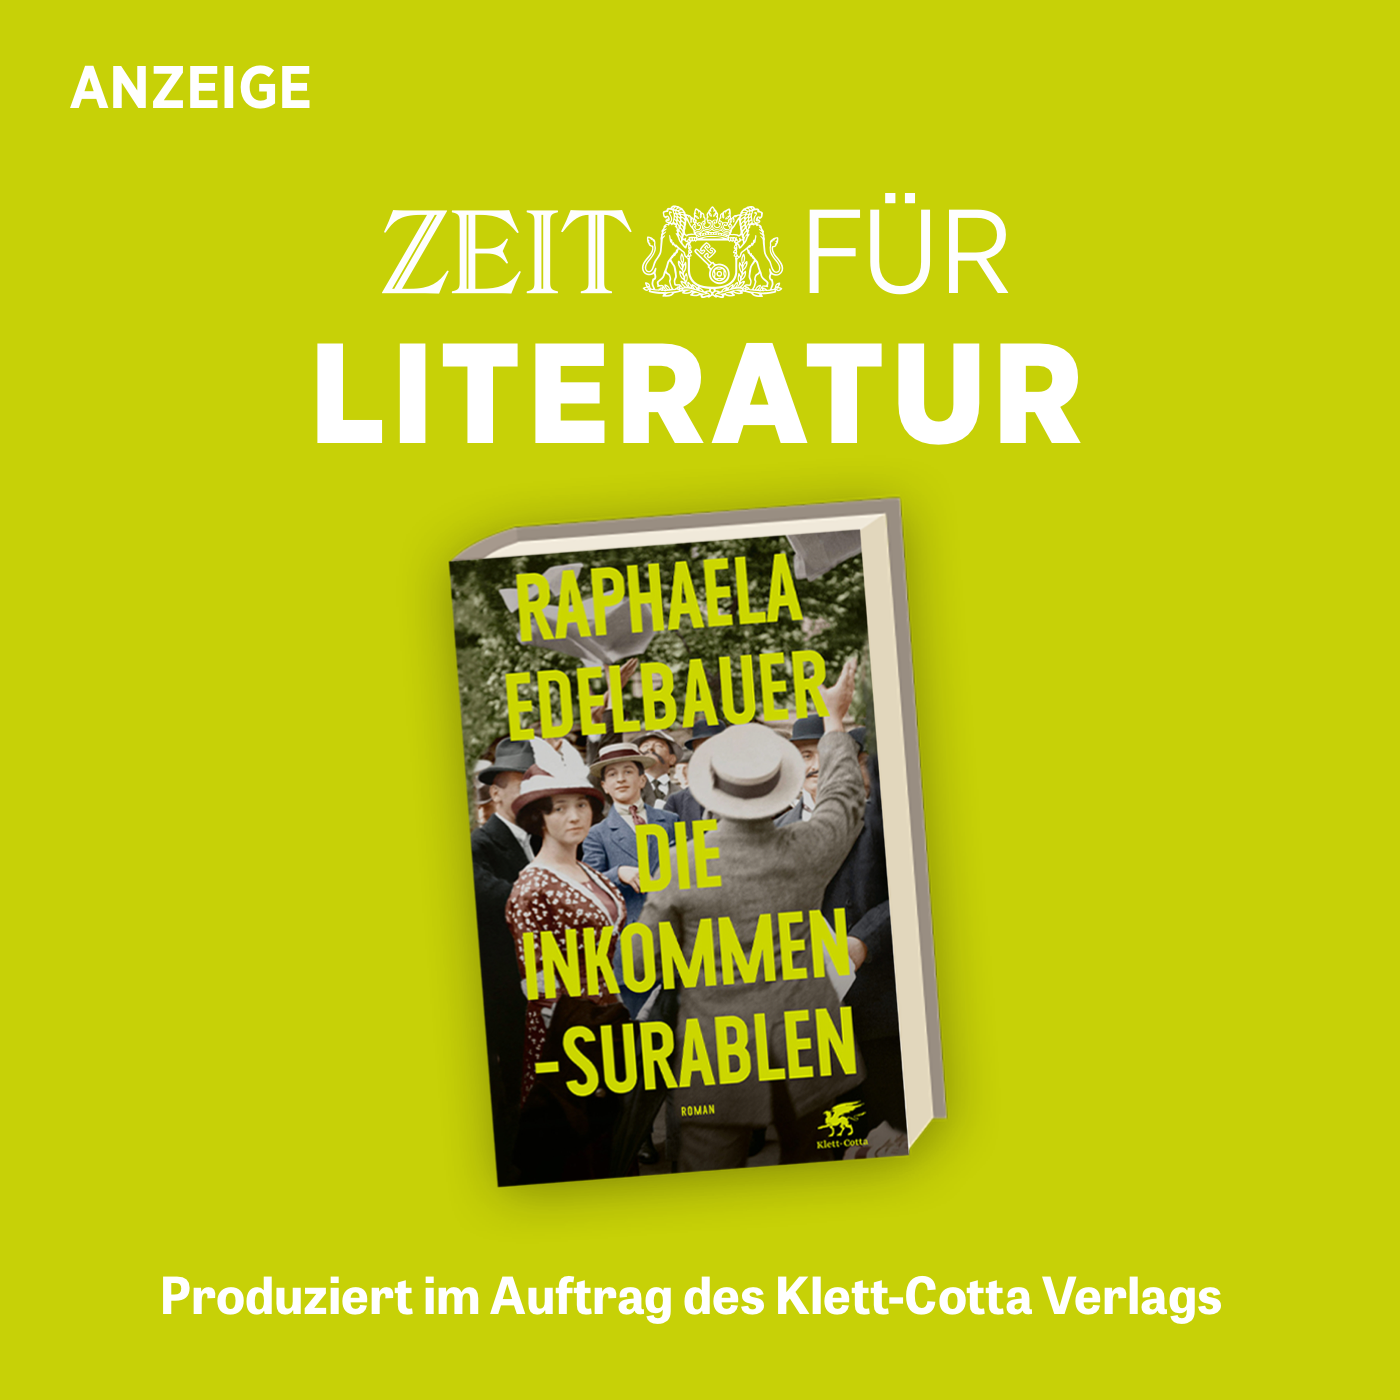 ZEIT für Literatur mit Raphaela Edelbauer